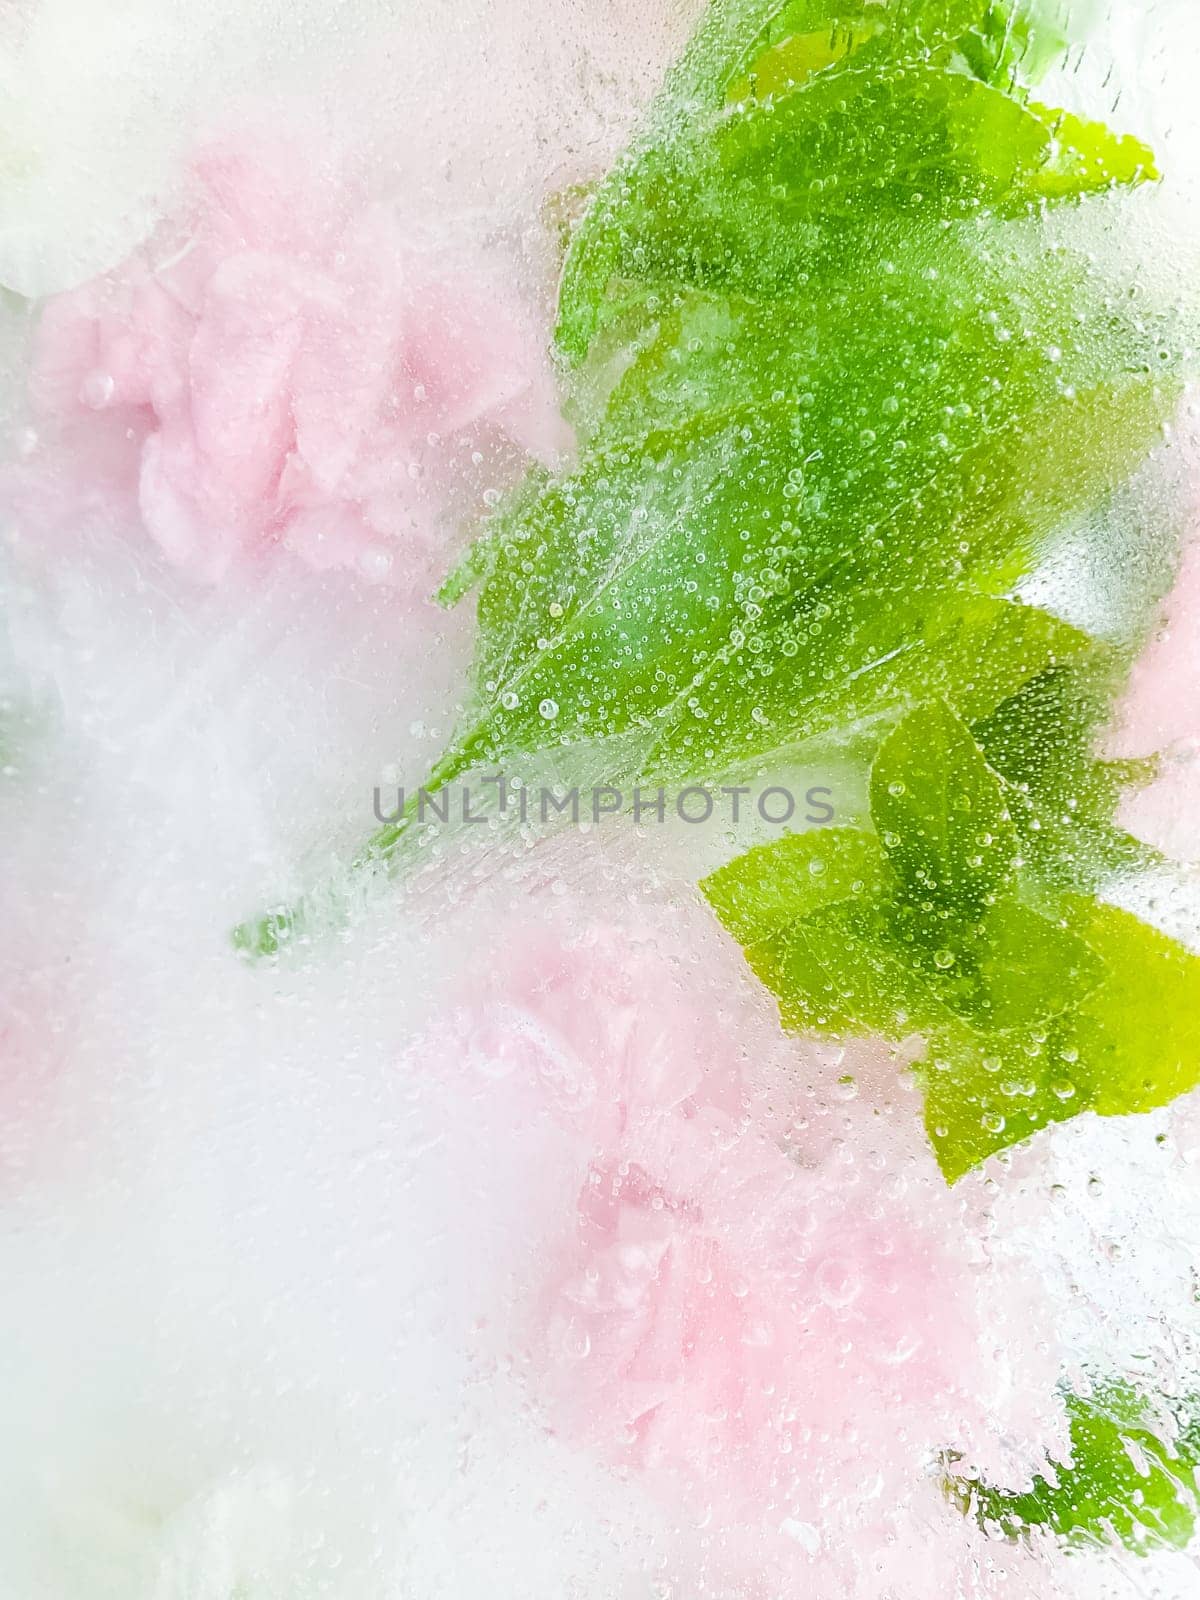 carnation, garden flowers frozen in ice. backgraund by Lunnica